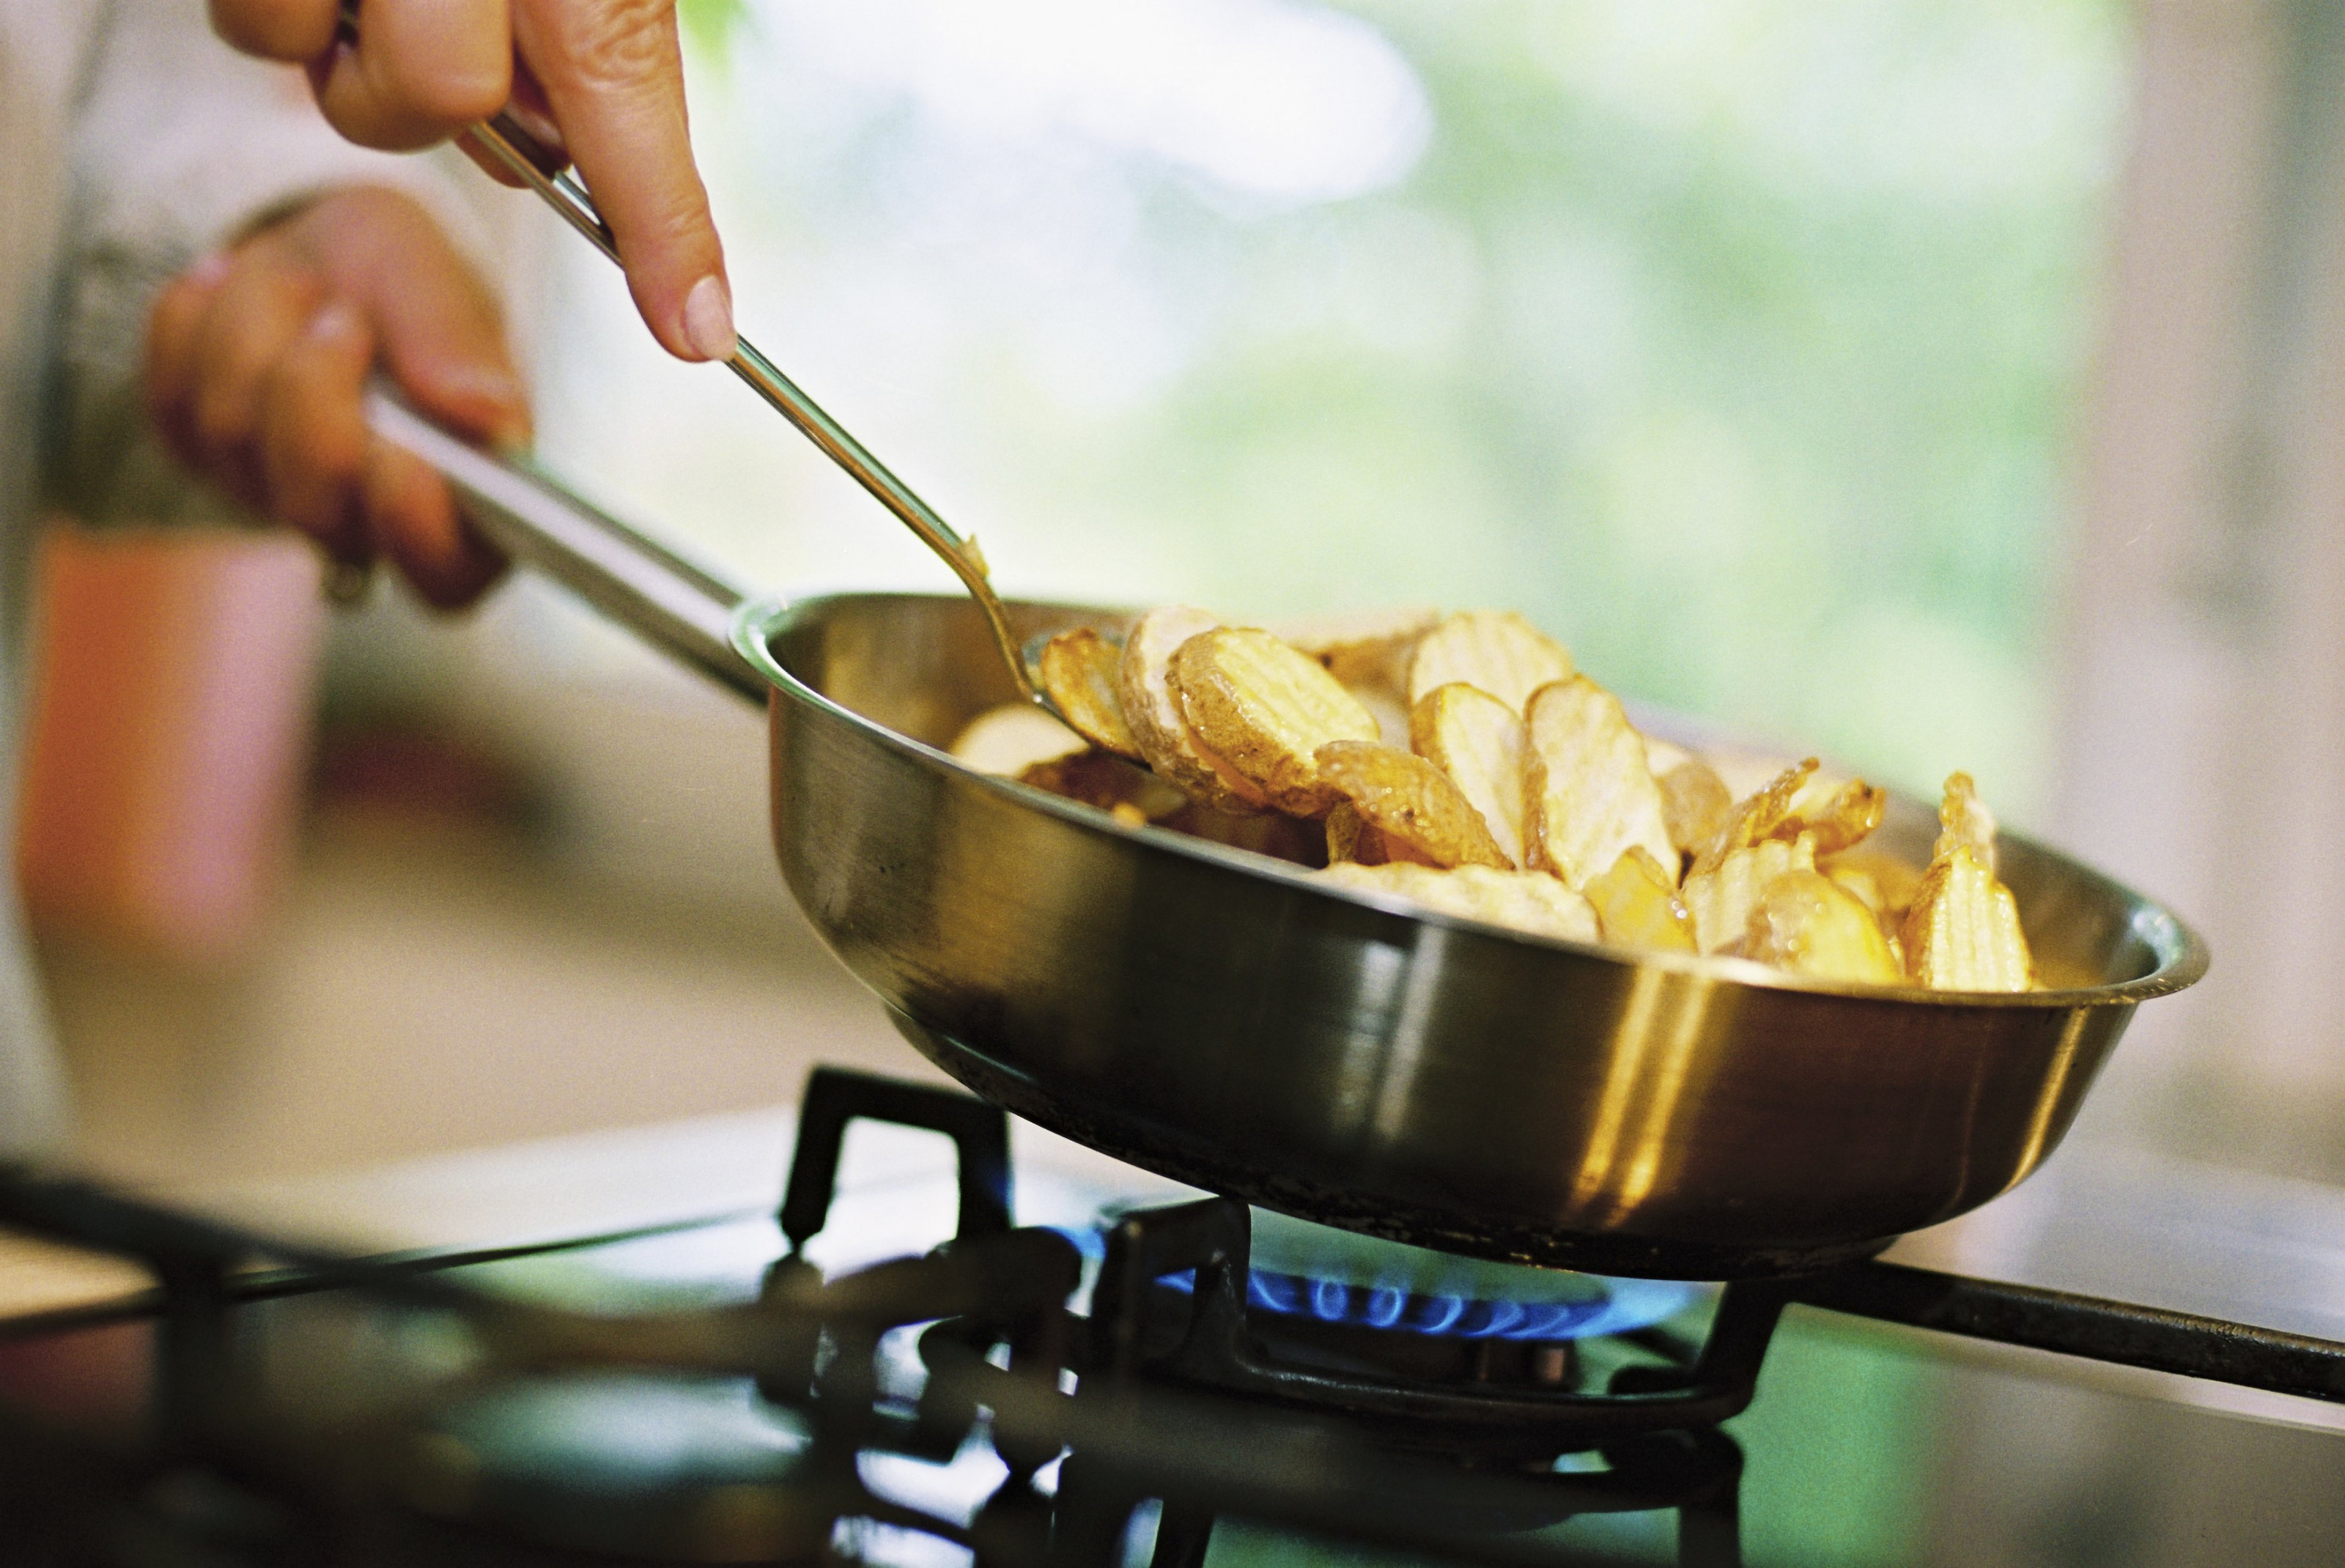 Почему приготовленную пищу. Термическая обработка пищи. Процесс приготовления пищи. Сковородка с картошкой на плите. Еда жариться на сковородке.